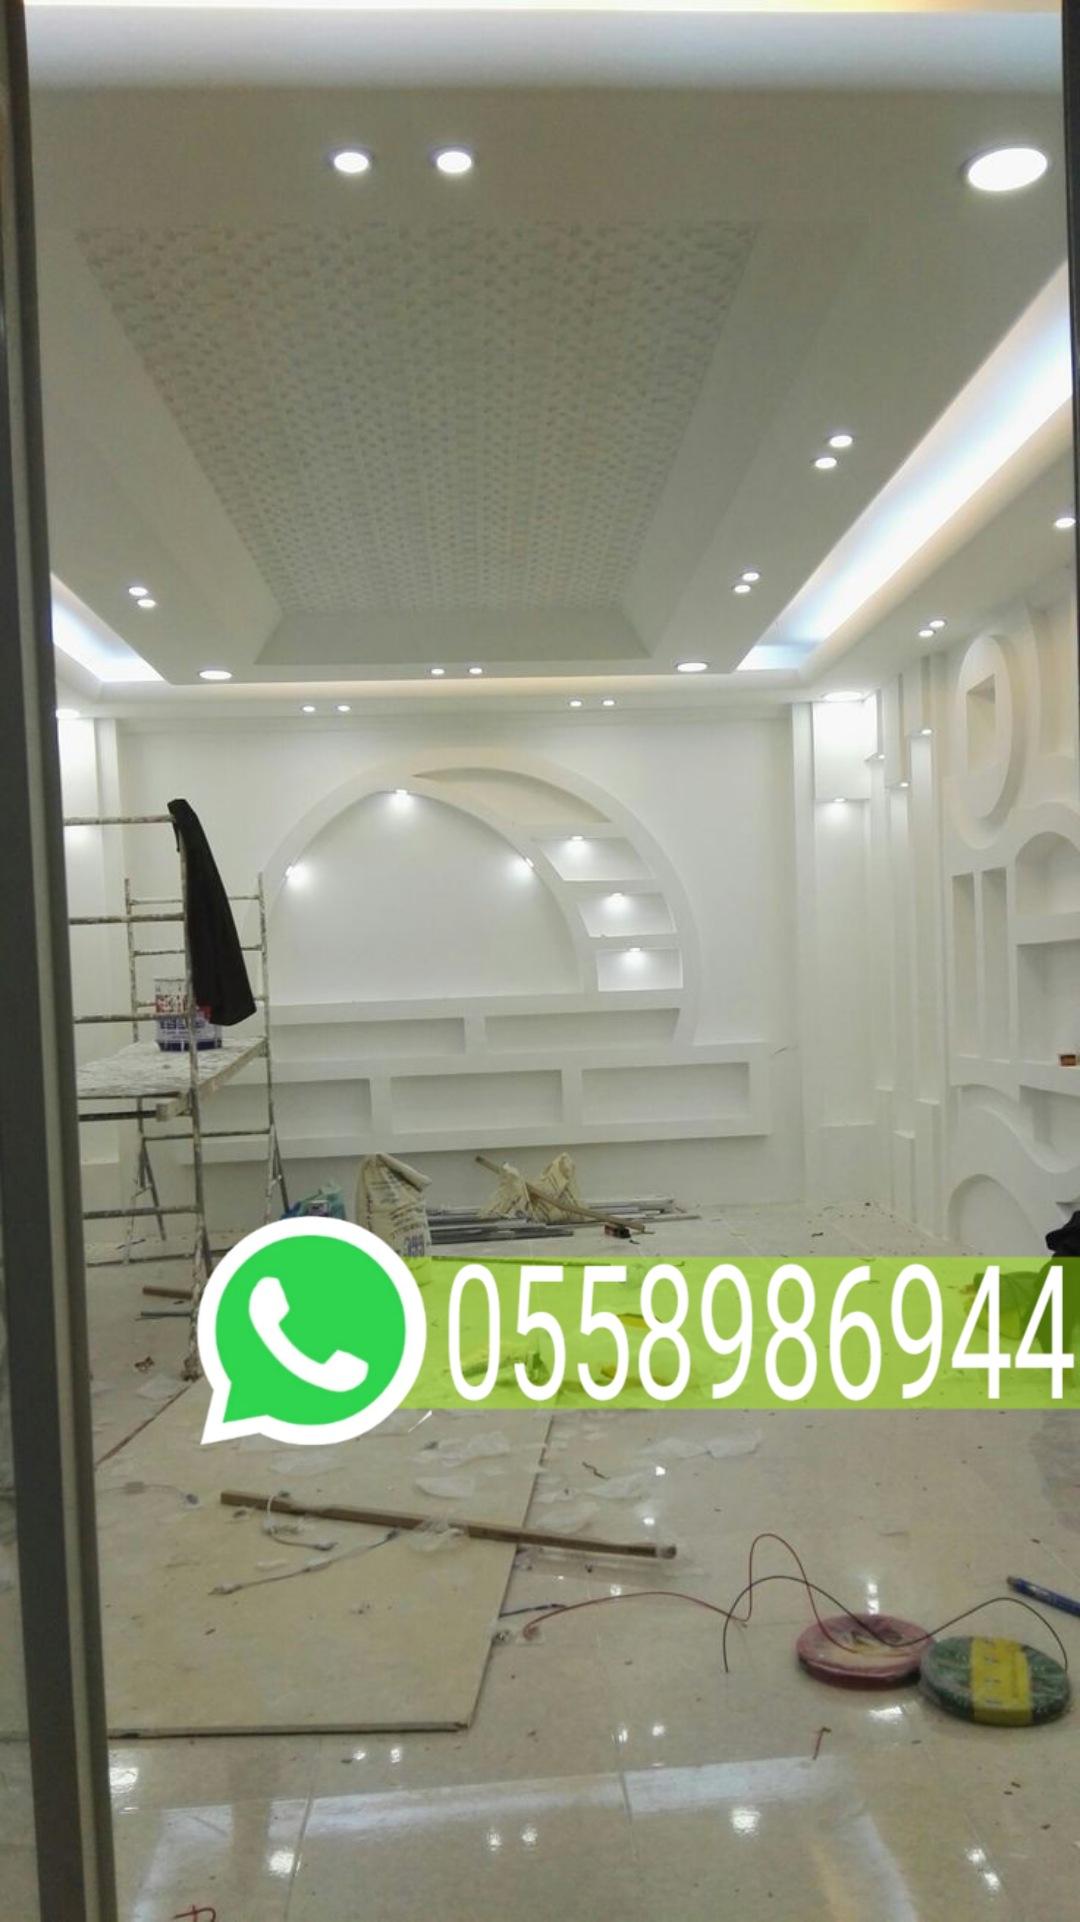 مقاول ترميم مباني في مكة المكرمة جوال 0558986944 427099057